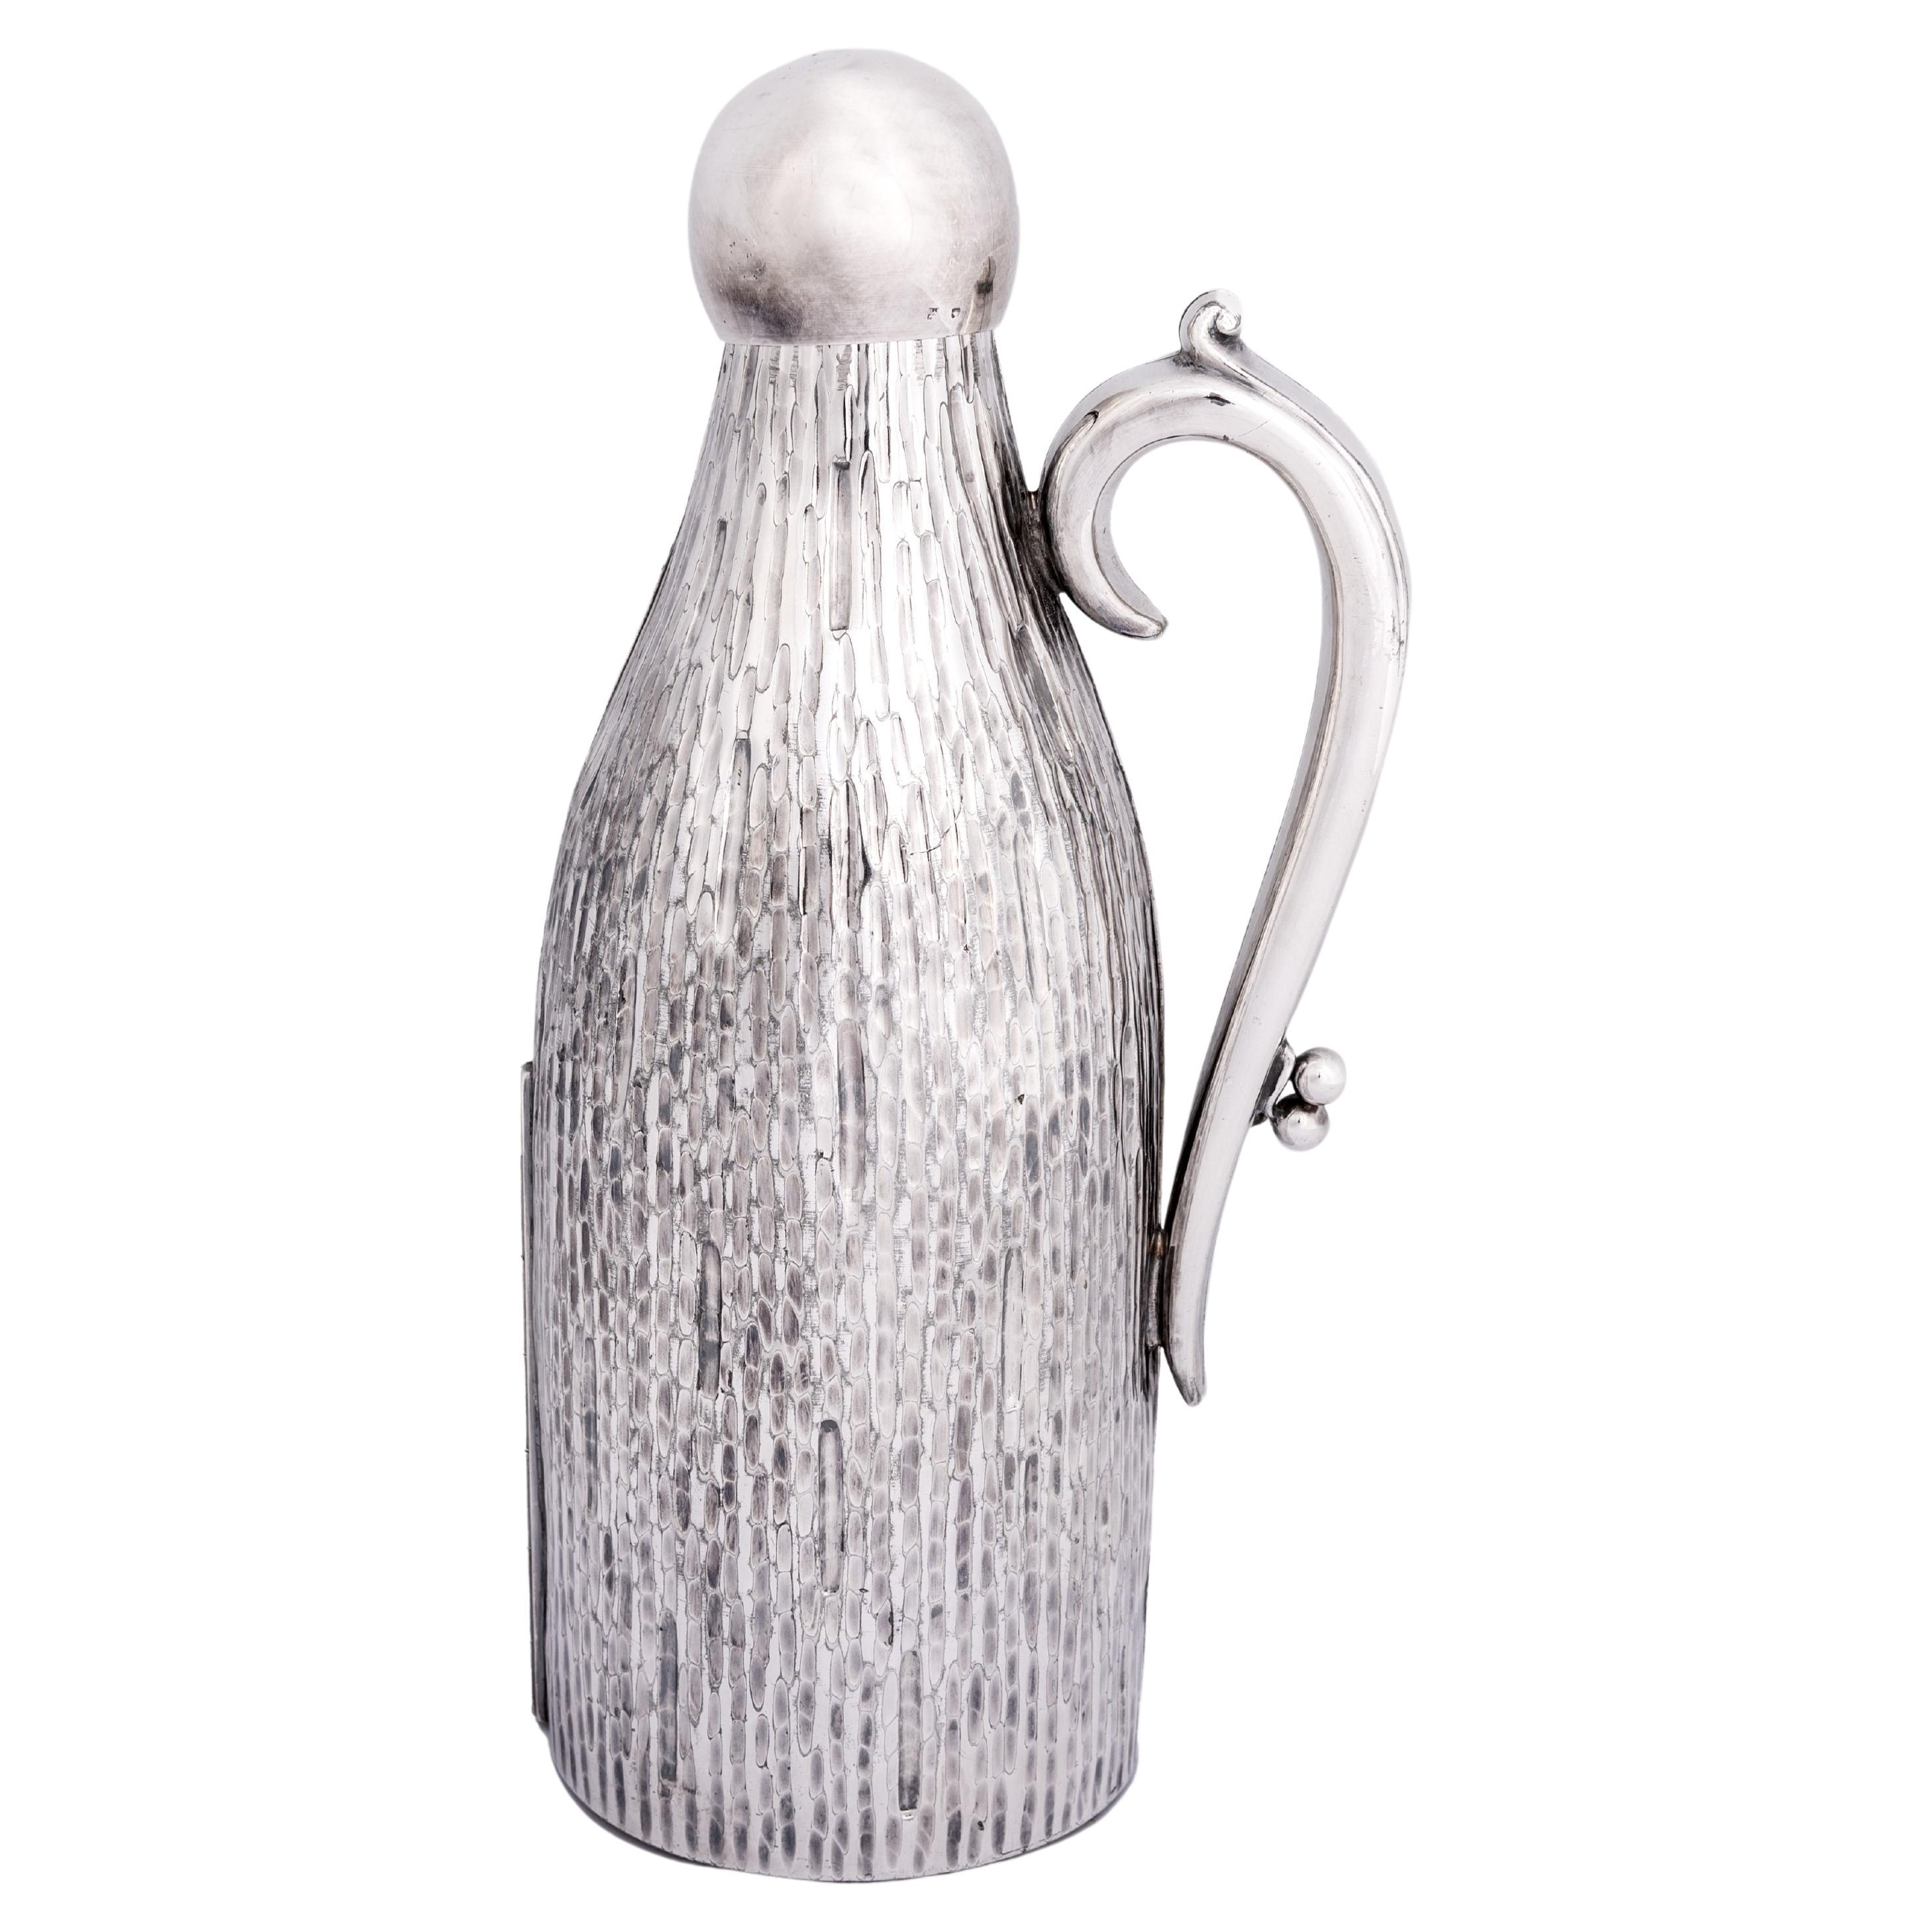 Englischer Art Déco Weinflaschenmantel aus reinem Silber England 1920er Jahre, gestempelt